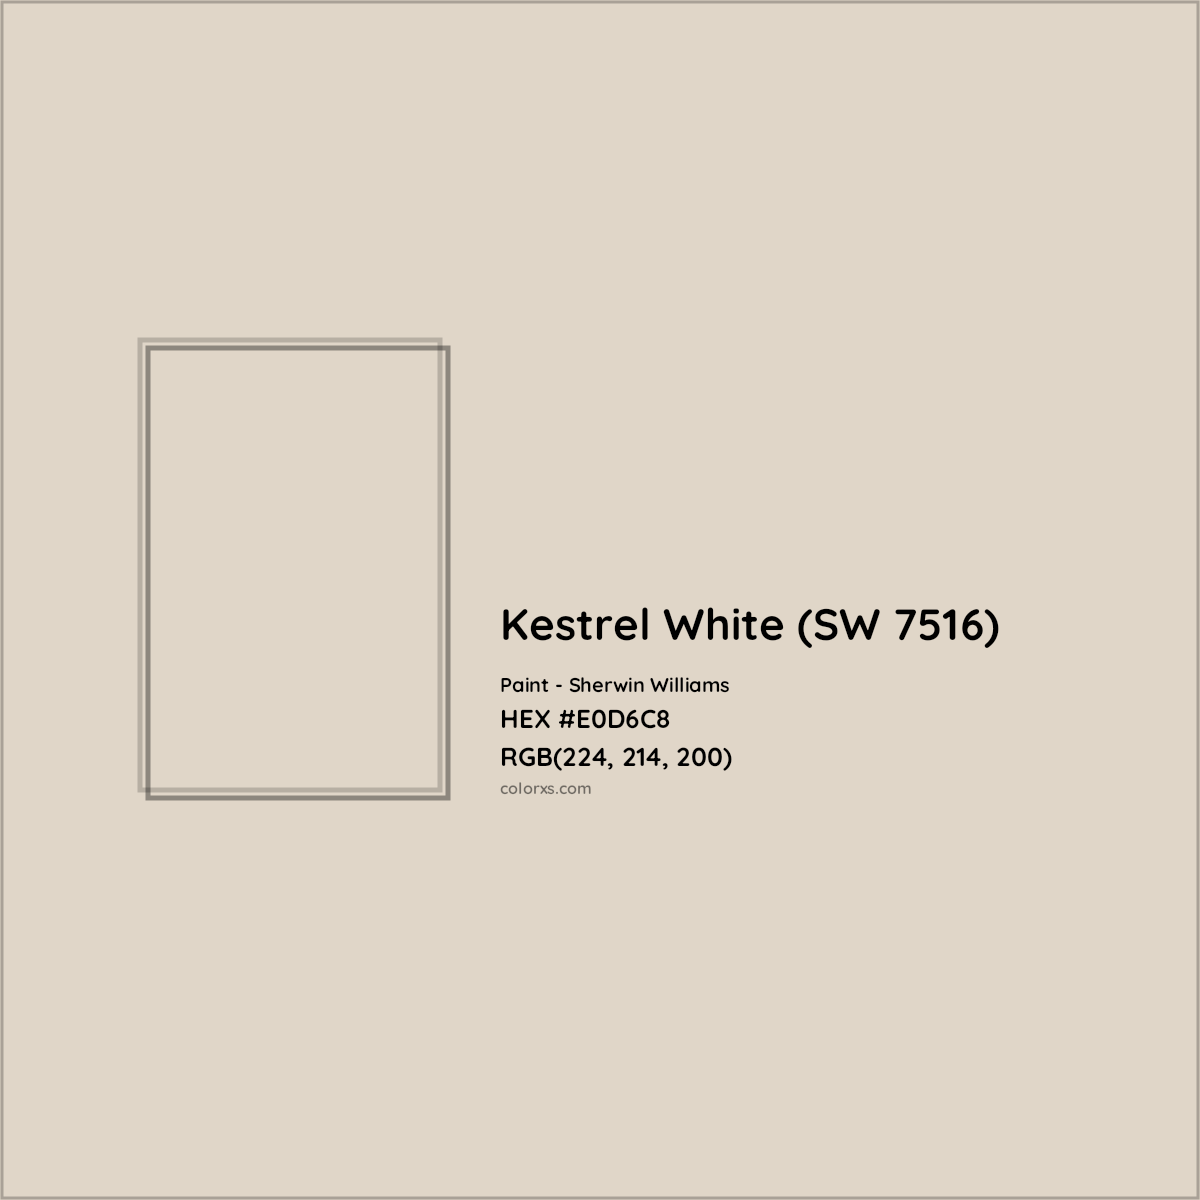 HEX #E0D6C8 Kestrel White (SW 7516) Paint Sherwin Williams - Color Code